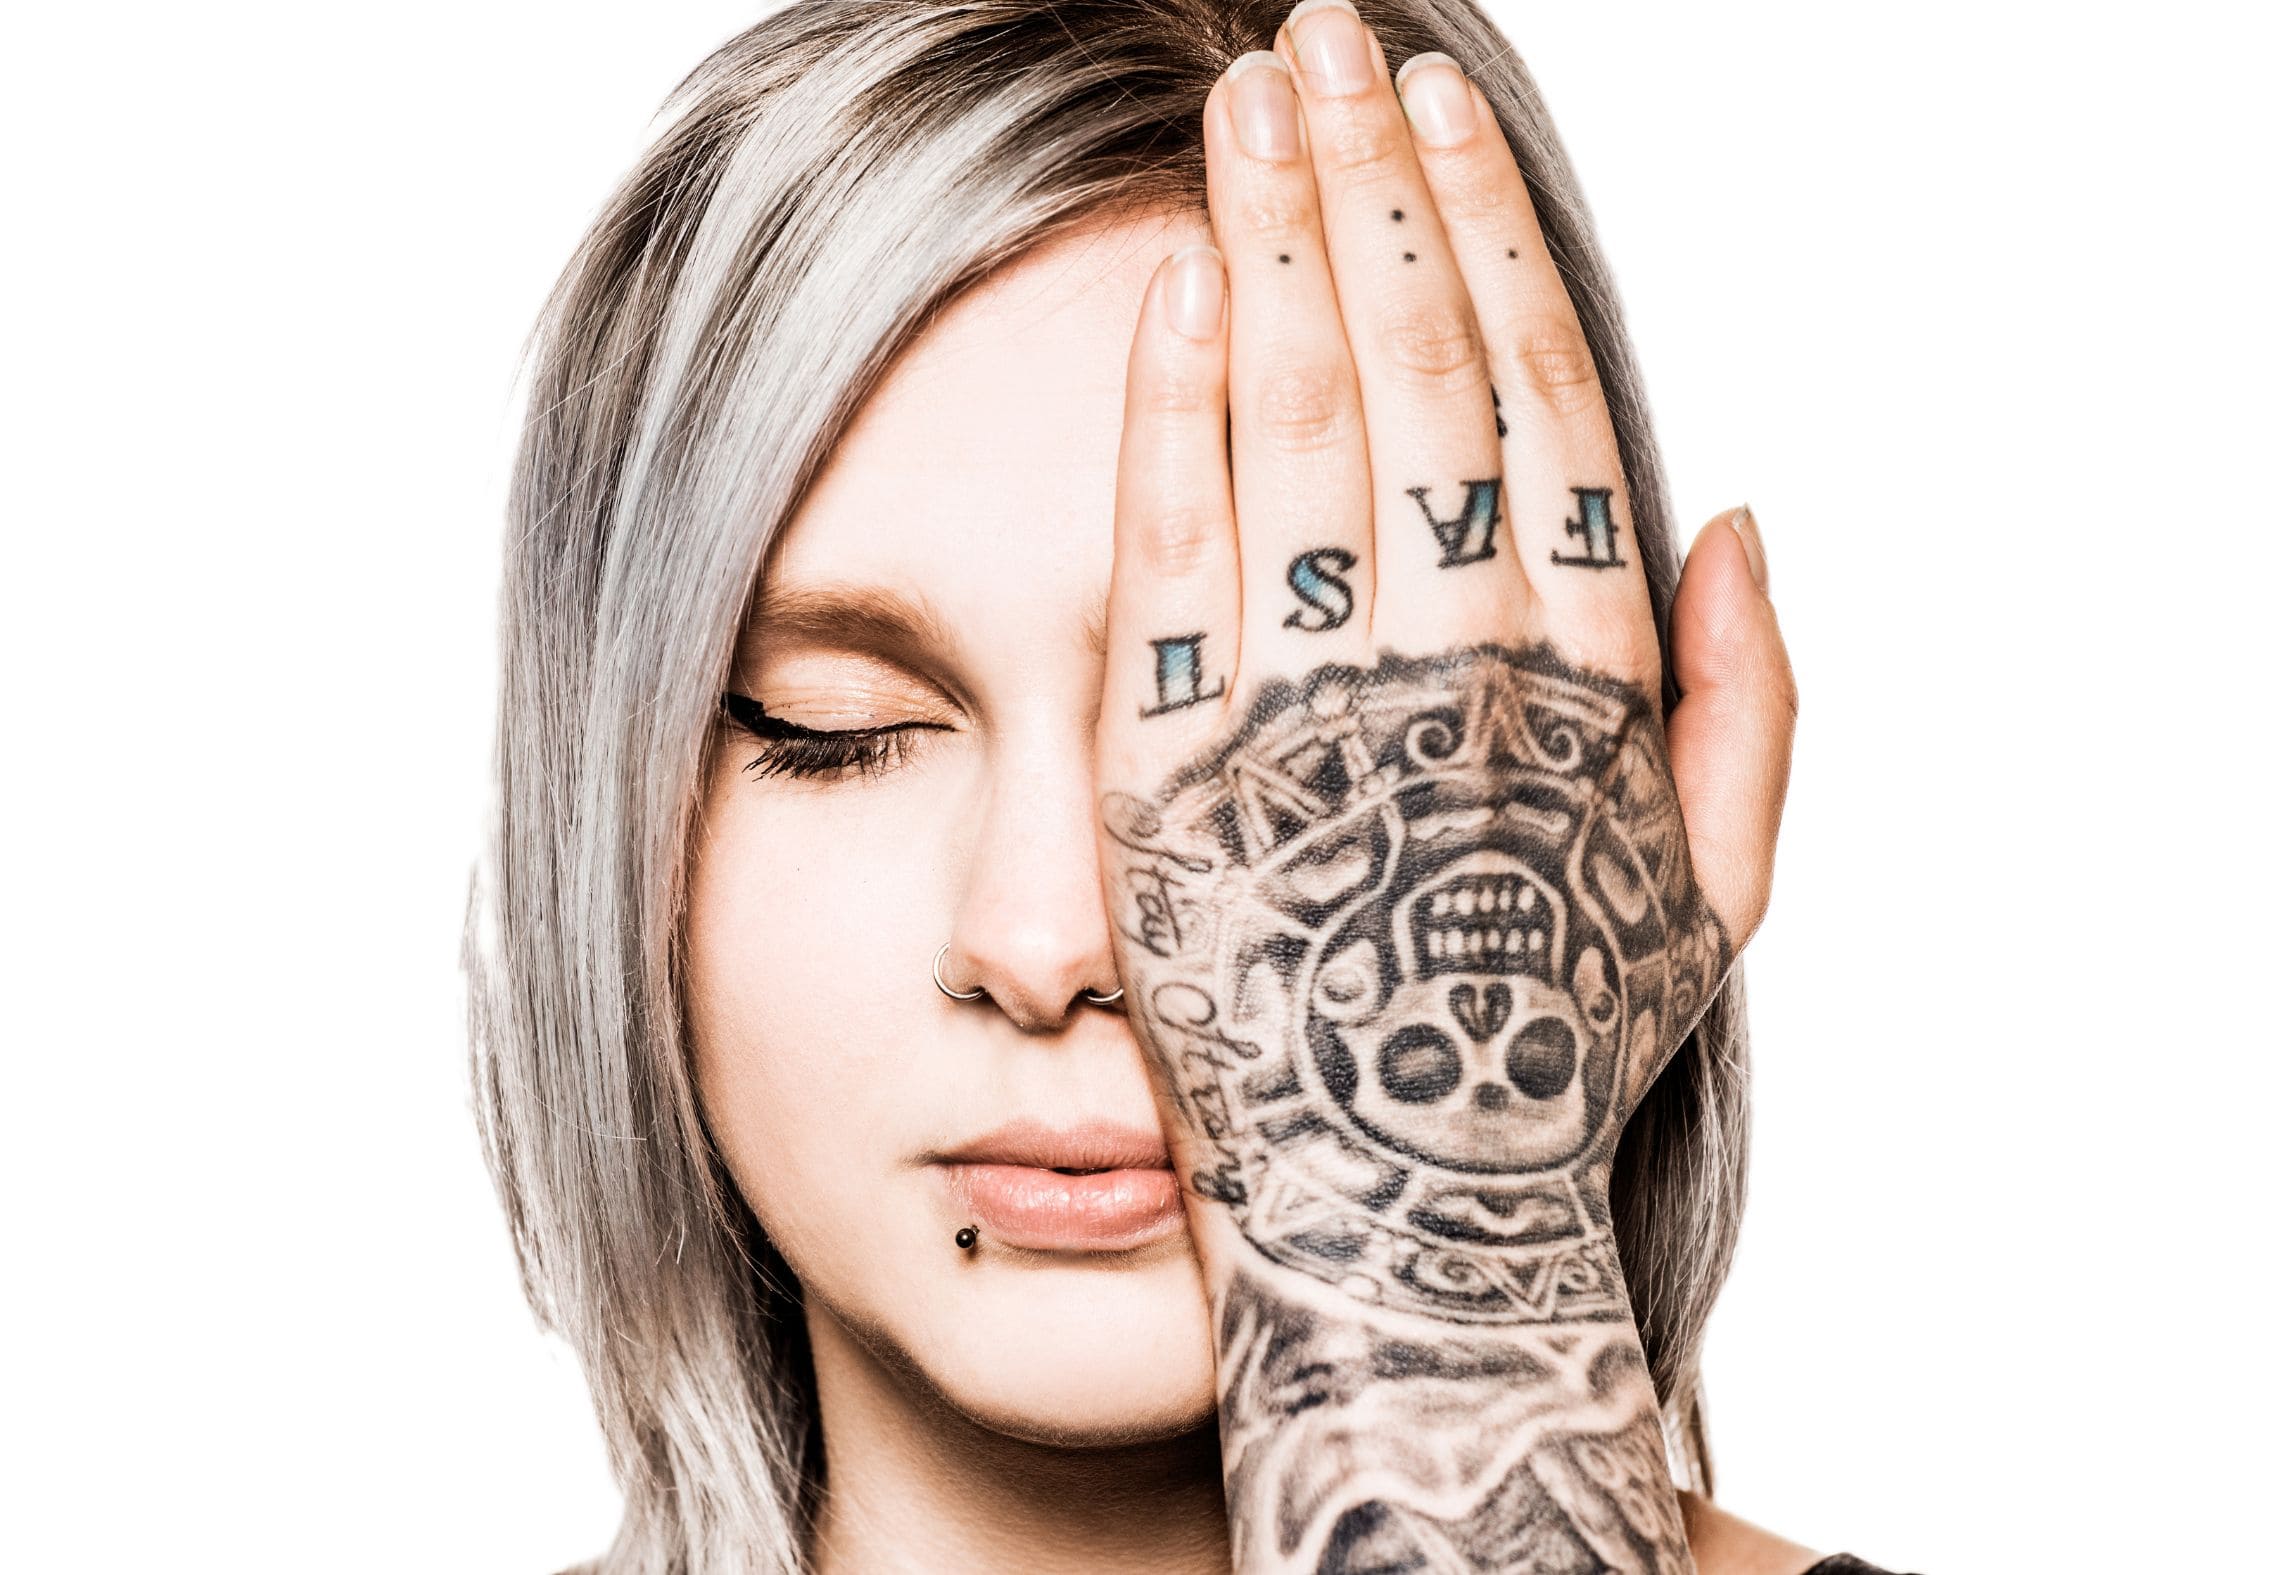 Eliminación de tatuajes con láser